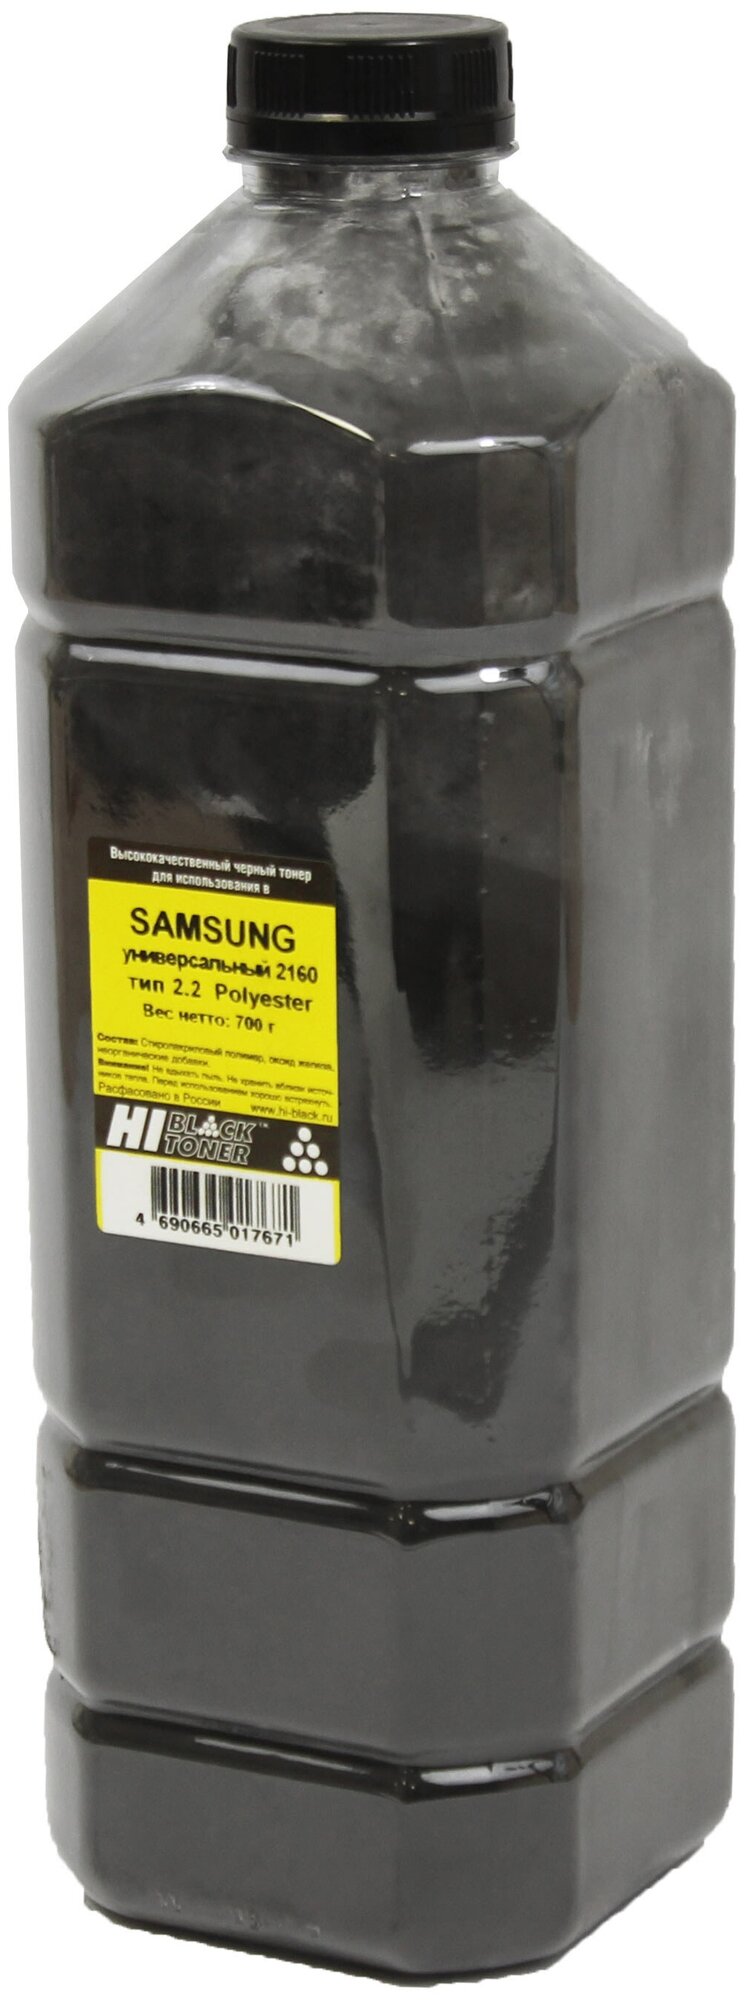 Тонер Samsung универсальный 2160 (Hi-Black) тип 2.2, Polyester, 700 г, канистра